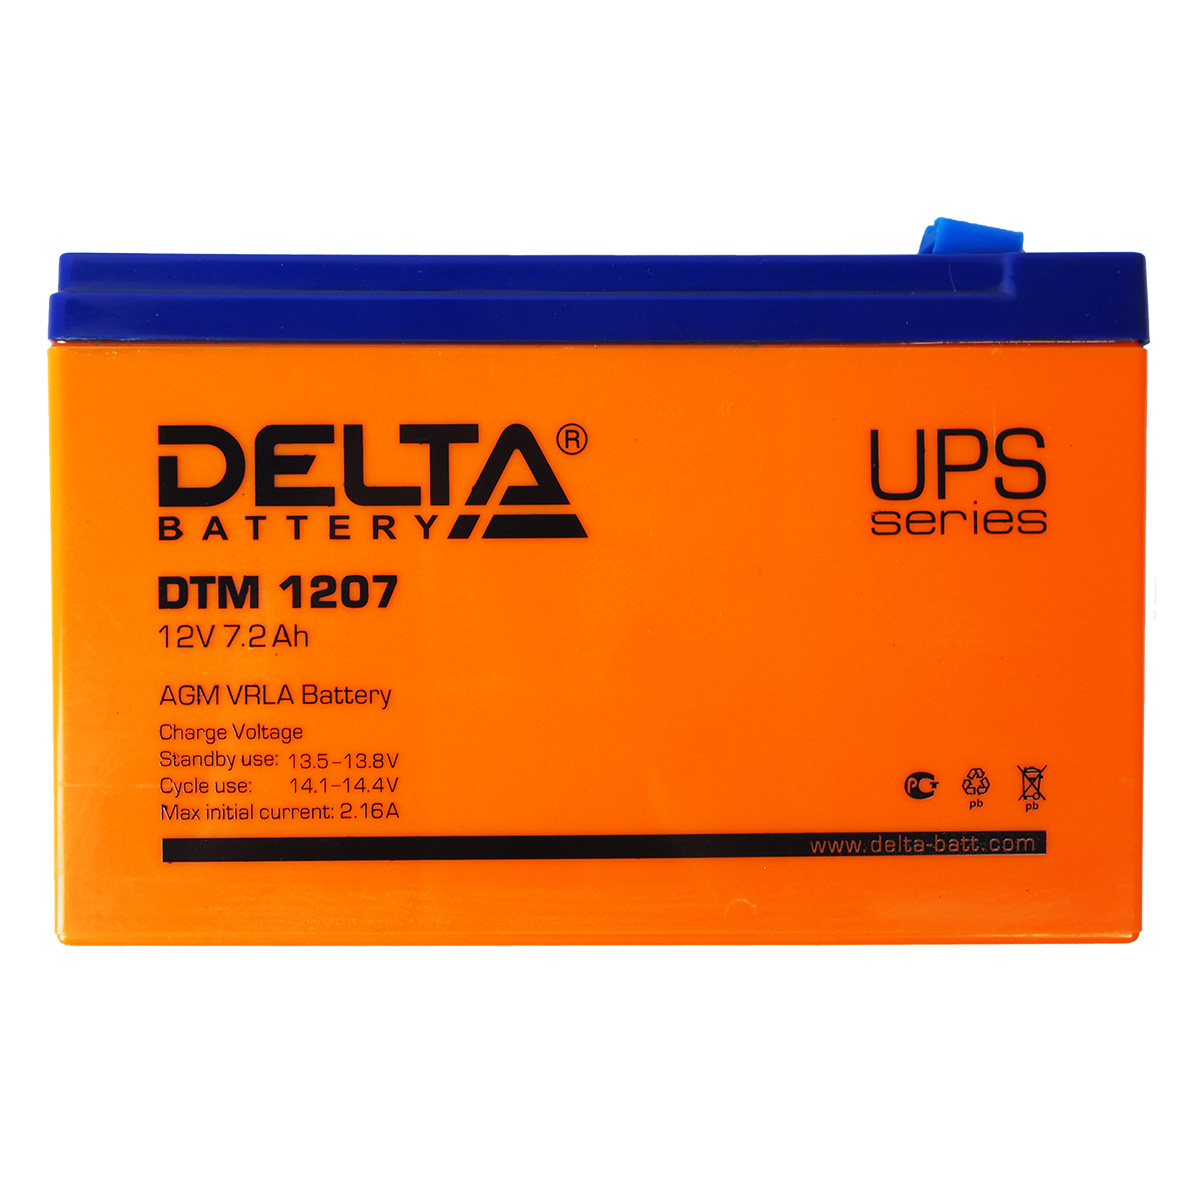 Dt 12v 7ah. Аккумуляторная батарея для ИБП Delta DTM 1207 (12v/ 7.2Ah) - 1 шт. Аккумуляторная батарея для ИБП Delta DTM 1207. Батарея Delta DTM 1207 12v 7,2ah. Аккумуляторная батарея Delta DT 1207 (12v / 7ah).